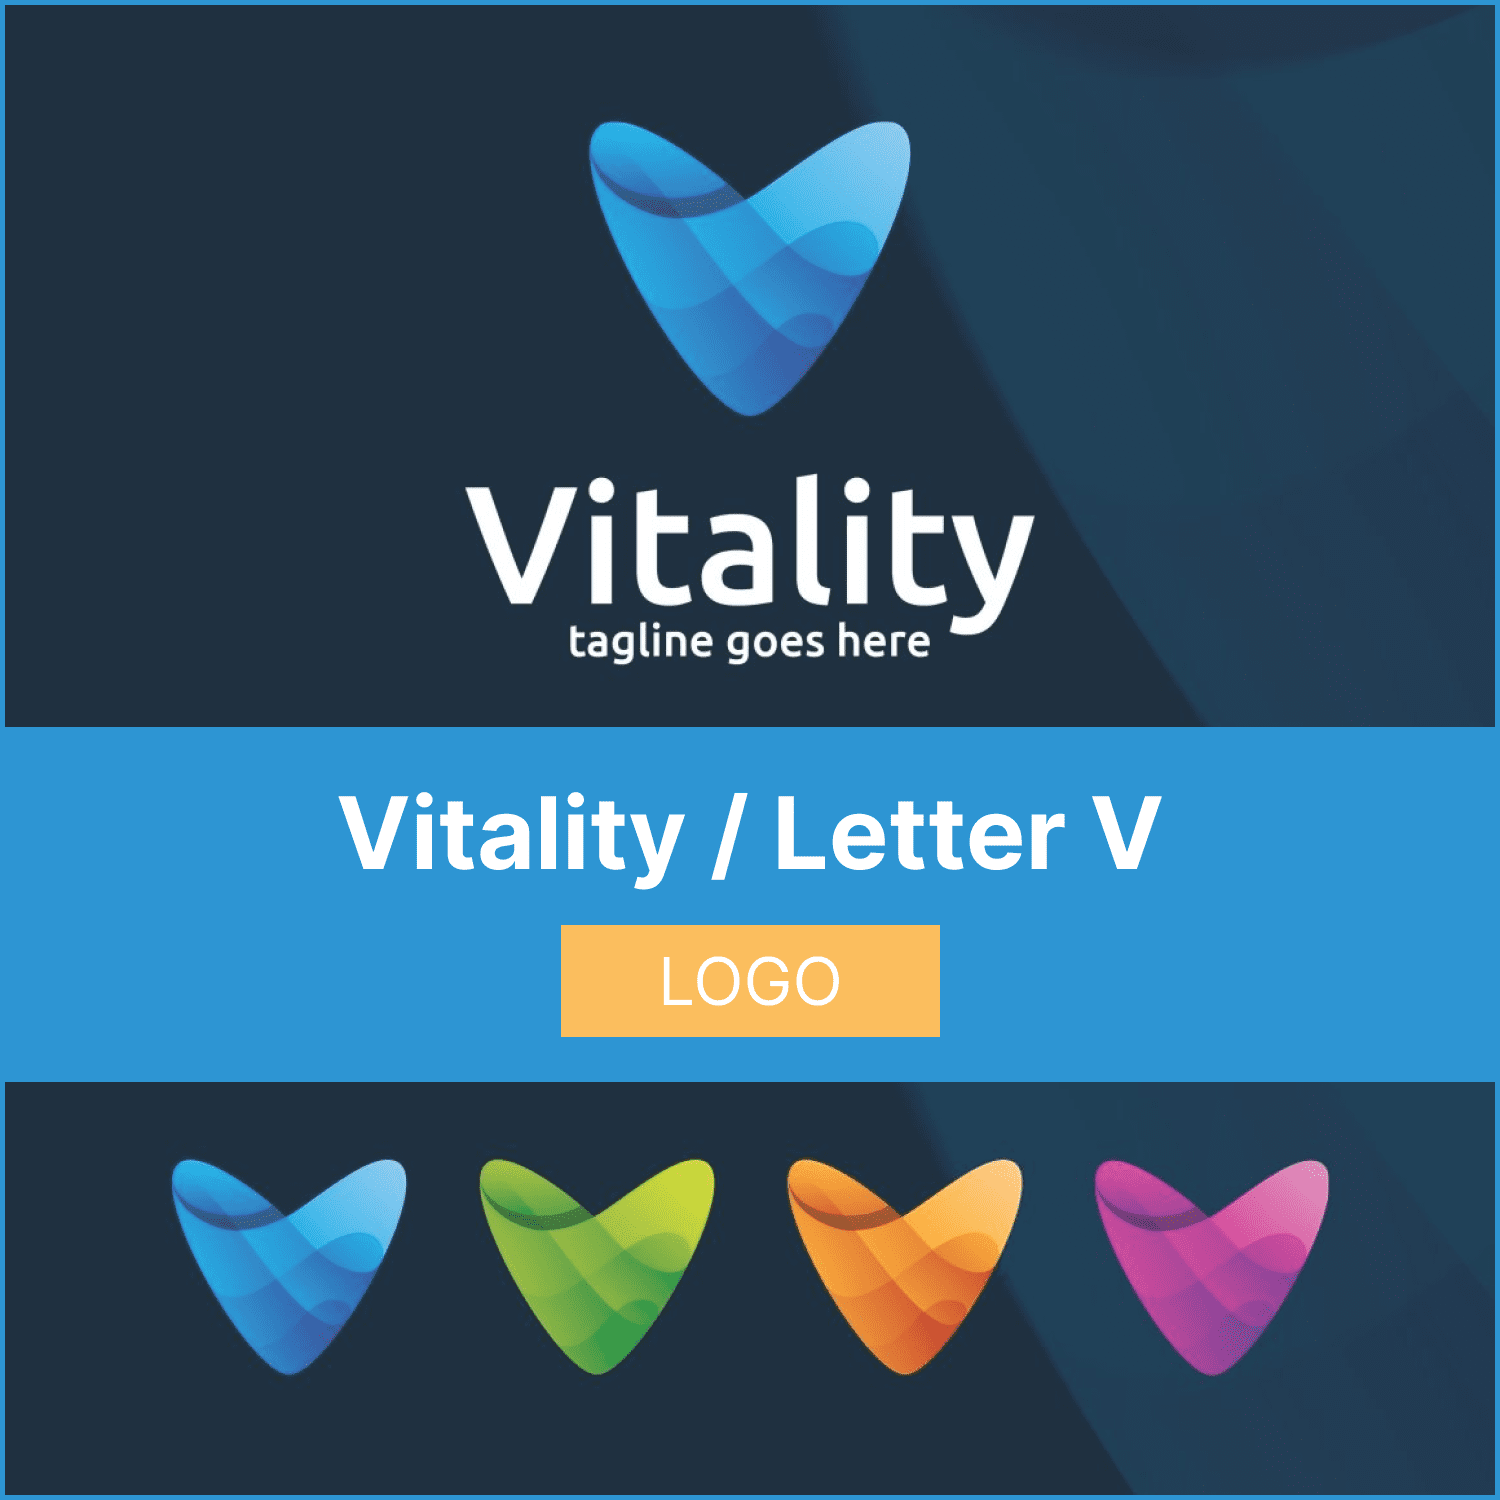 Vitality / Letter V - Logo cover.